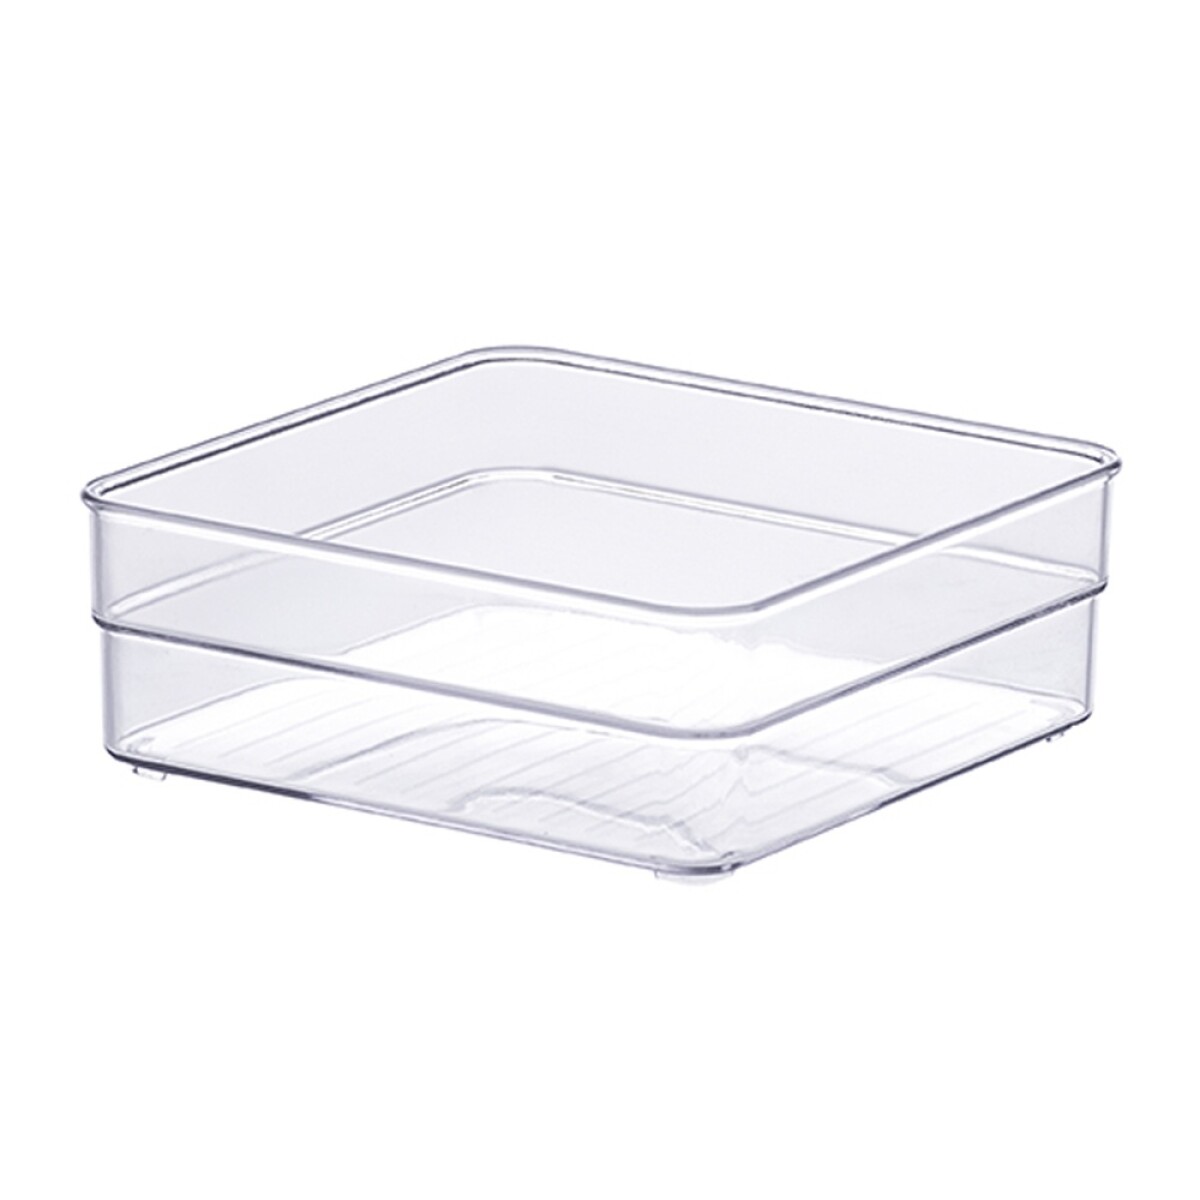 Caja Organizadora Multiuso Para Hogar Diamond 15x15x5.2cm - Transparente 